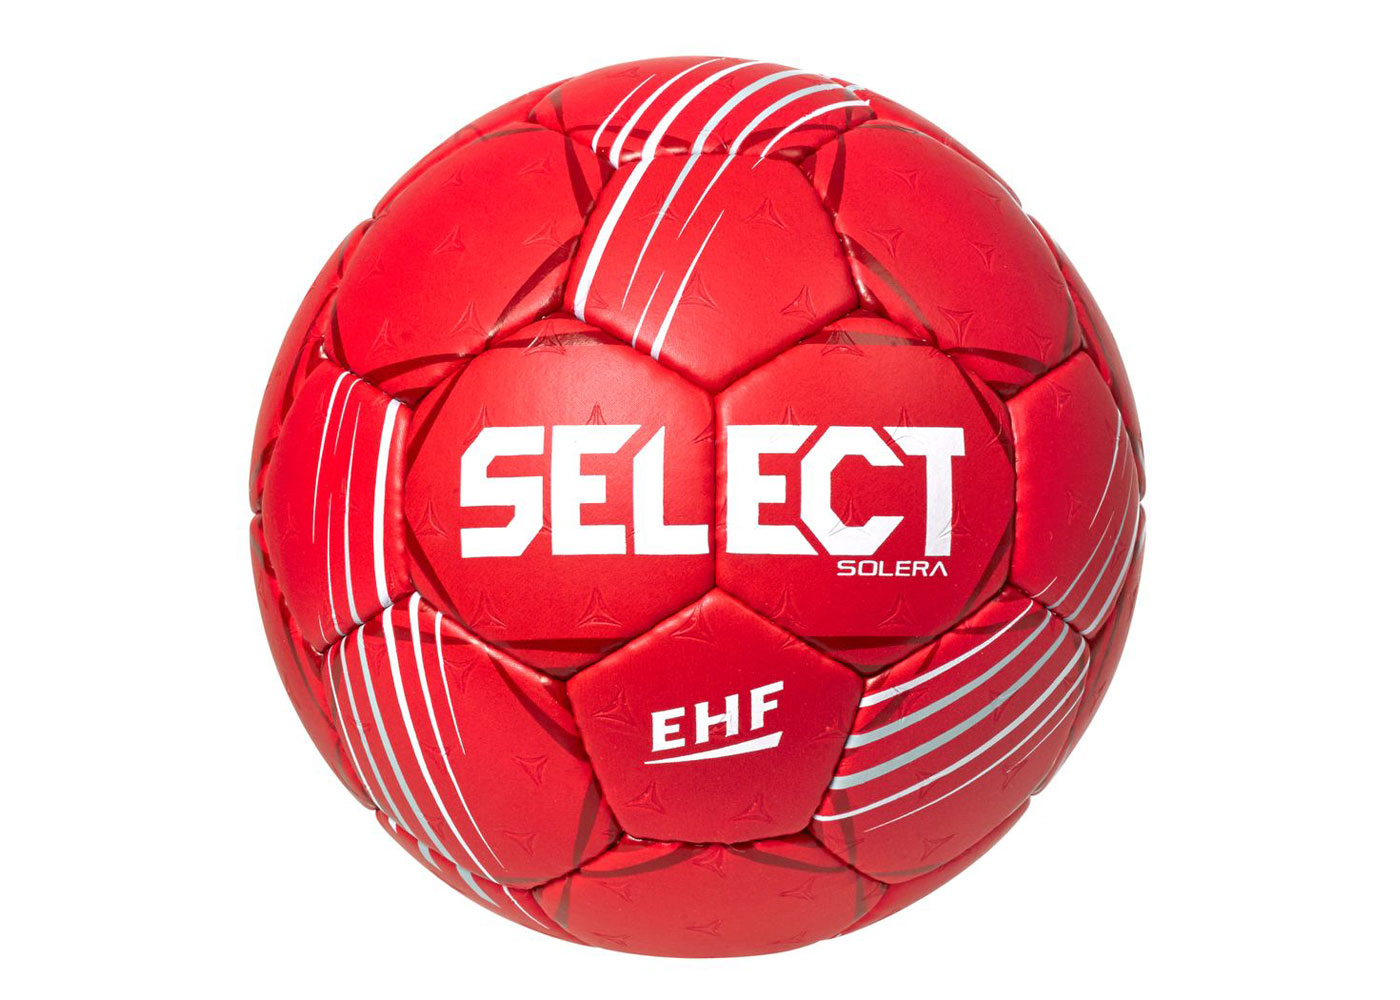 Házenkářský míč Select HB Solera červená vel.2